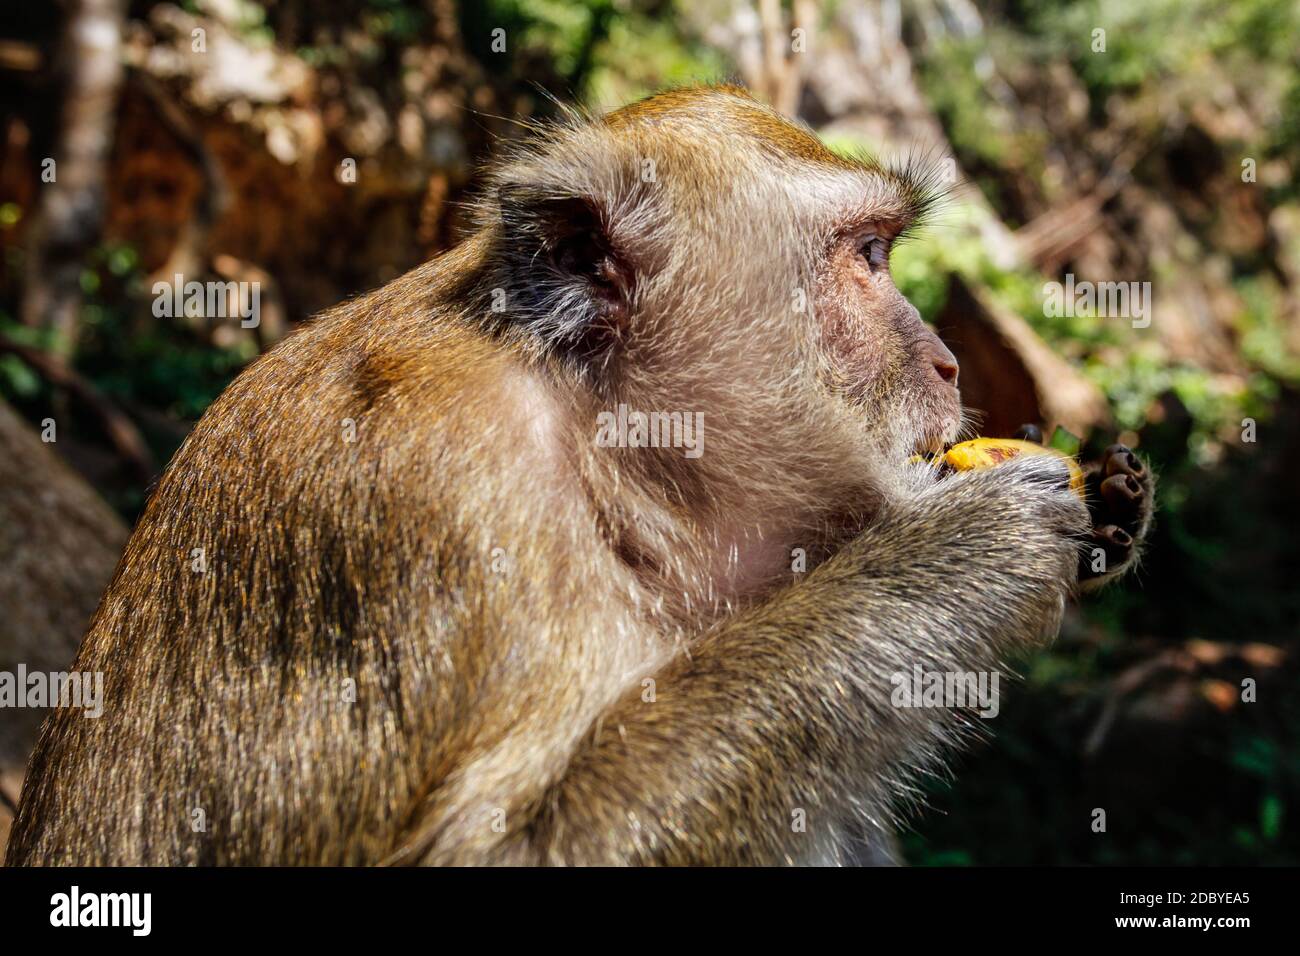 Dettagli sulla testa della lunga coda Macaque monkey (Macaca fascicularis) mangiando una banana da turista. Khao Sok, Thailandia Foto Stock